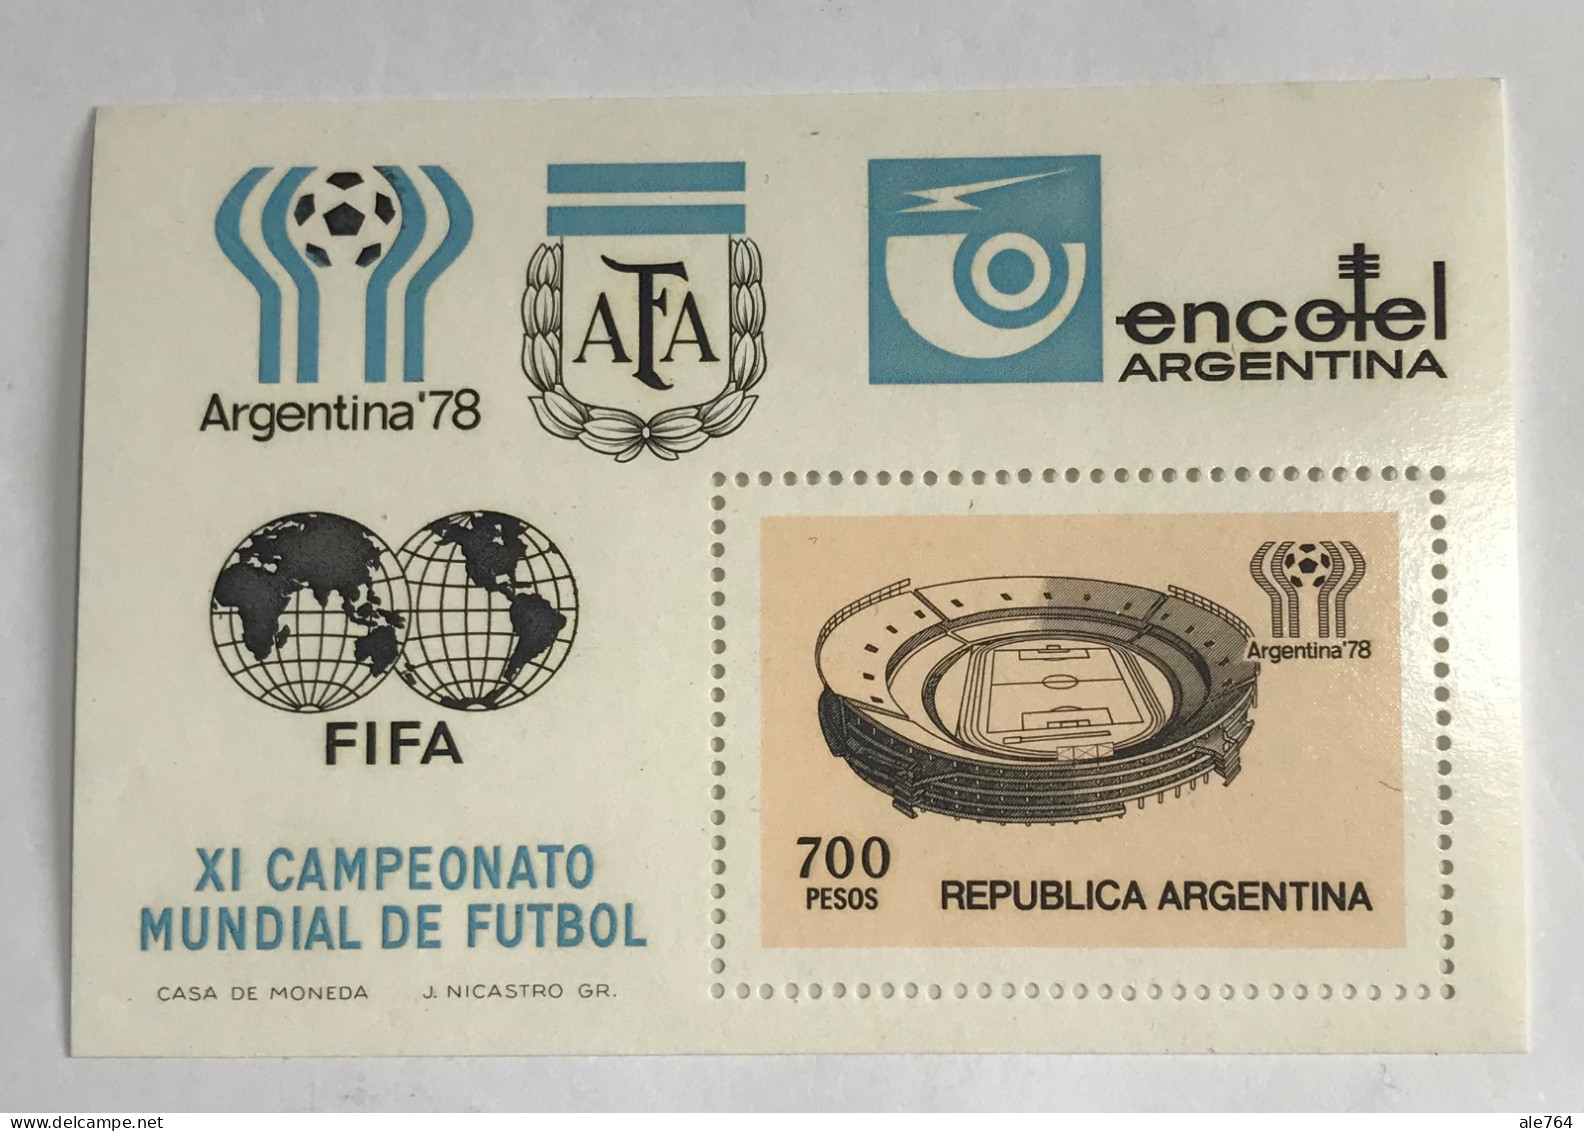 Argentina 1978 Mundial De Futbol, GJ Hb 27, Sc 1192, Mi Hb 18, MNH. - Unused Stamps